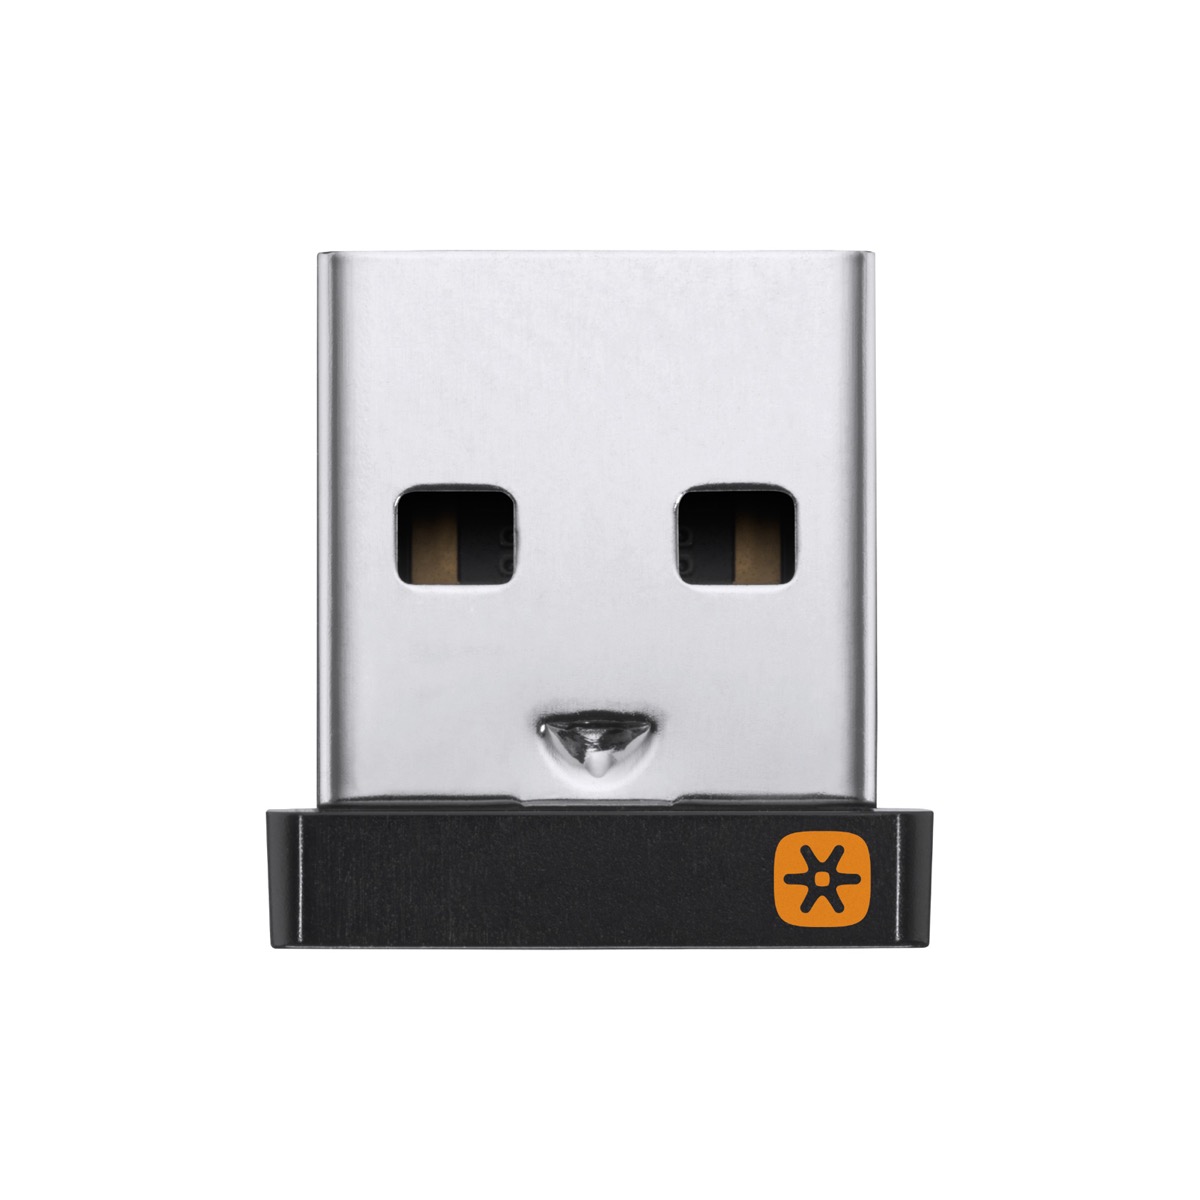 Logitech USB Adapter - Logitech 